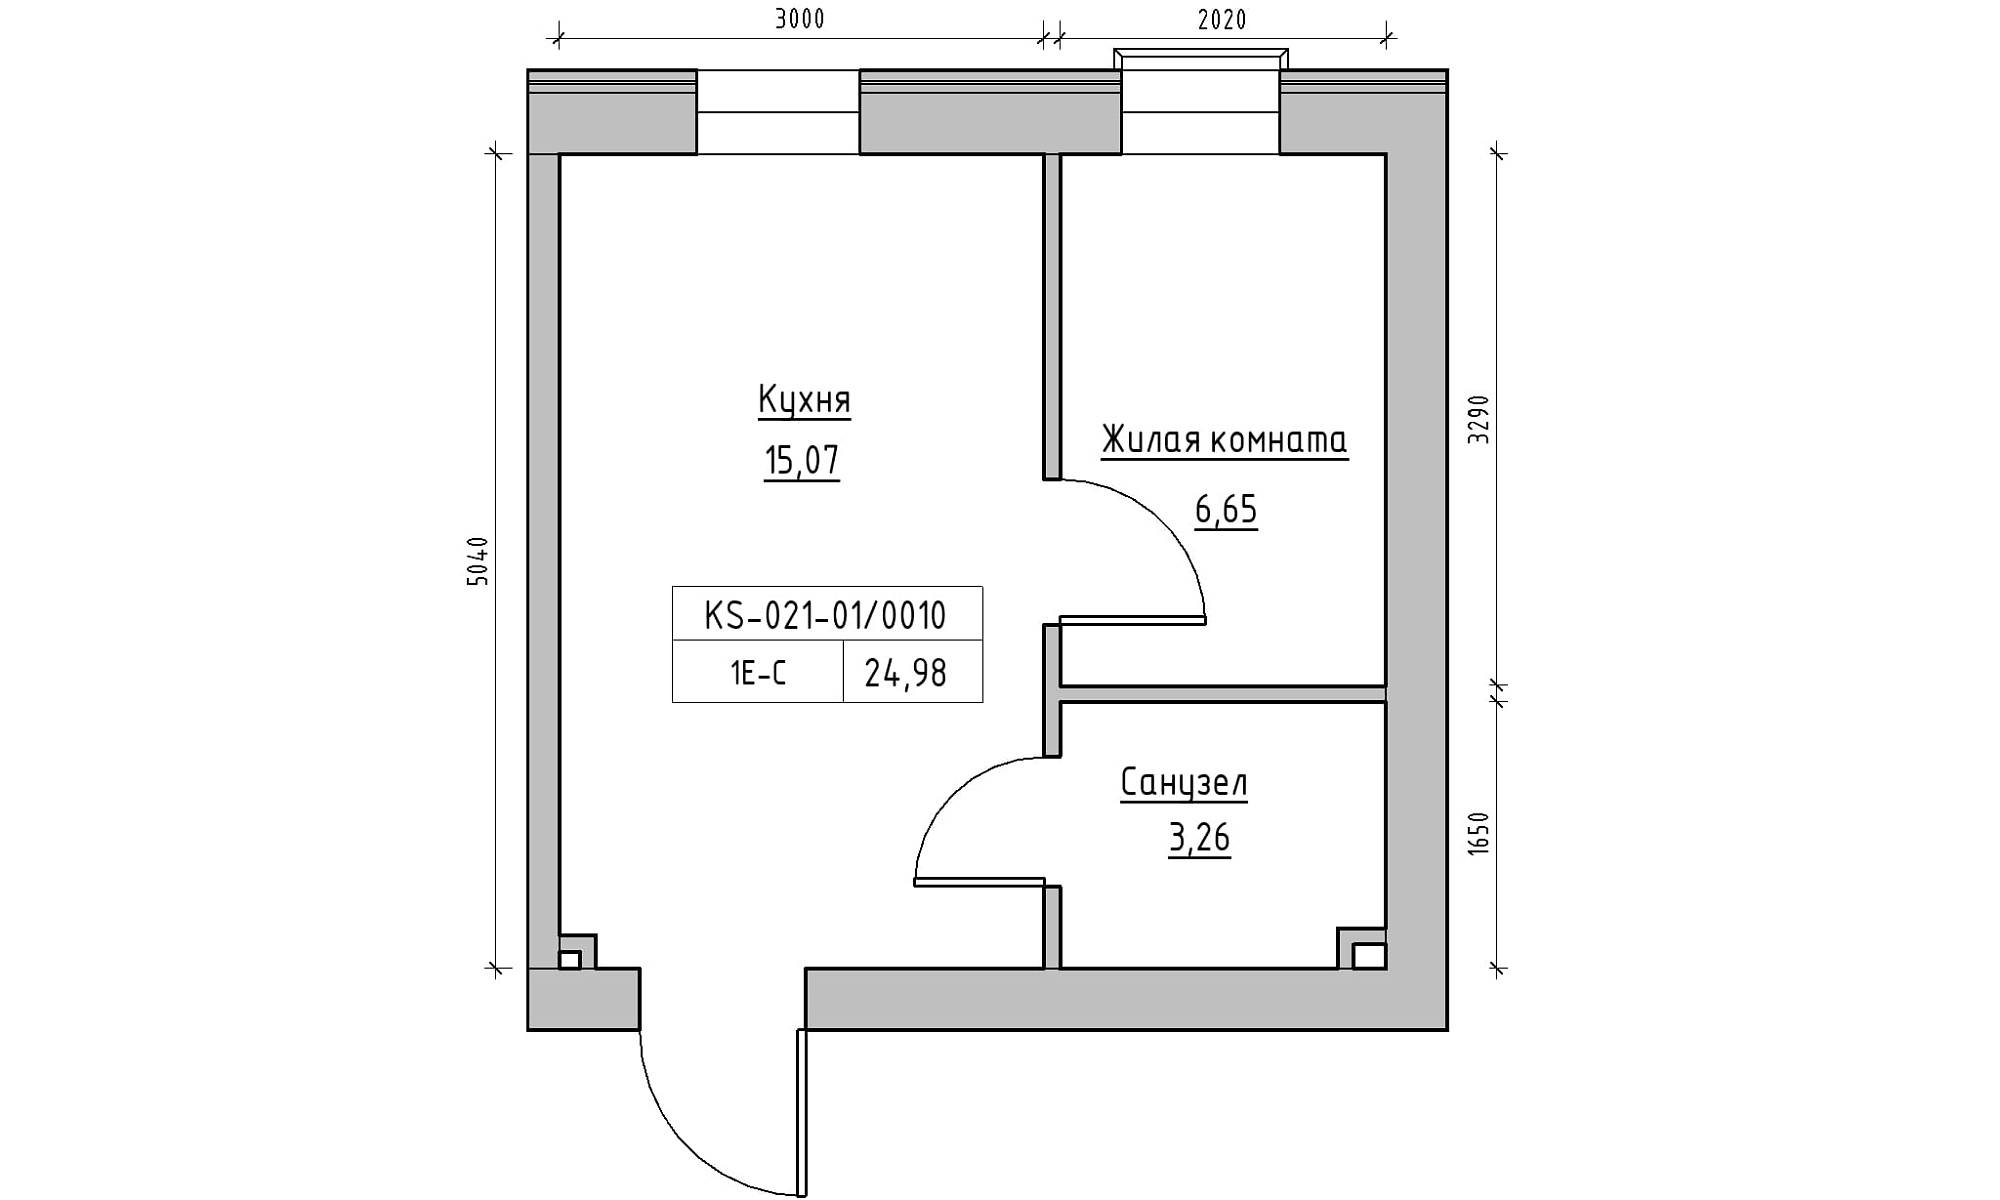 Планування 1-к квартира площею 24.98м2, KS-021-01/0010.